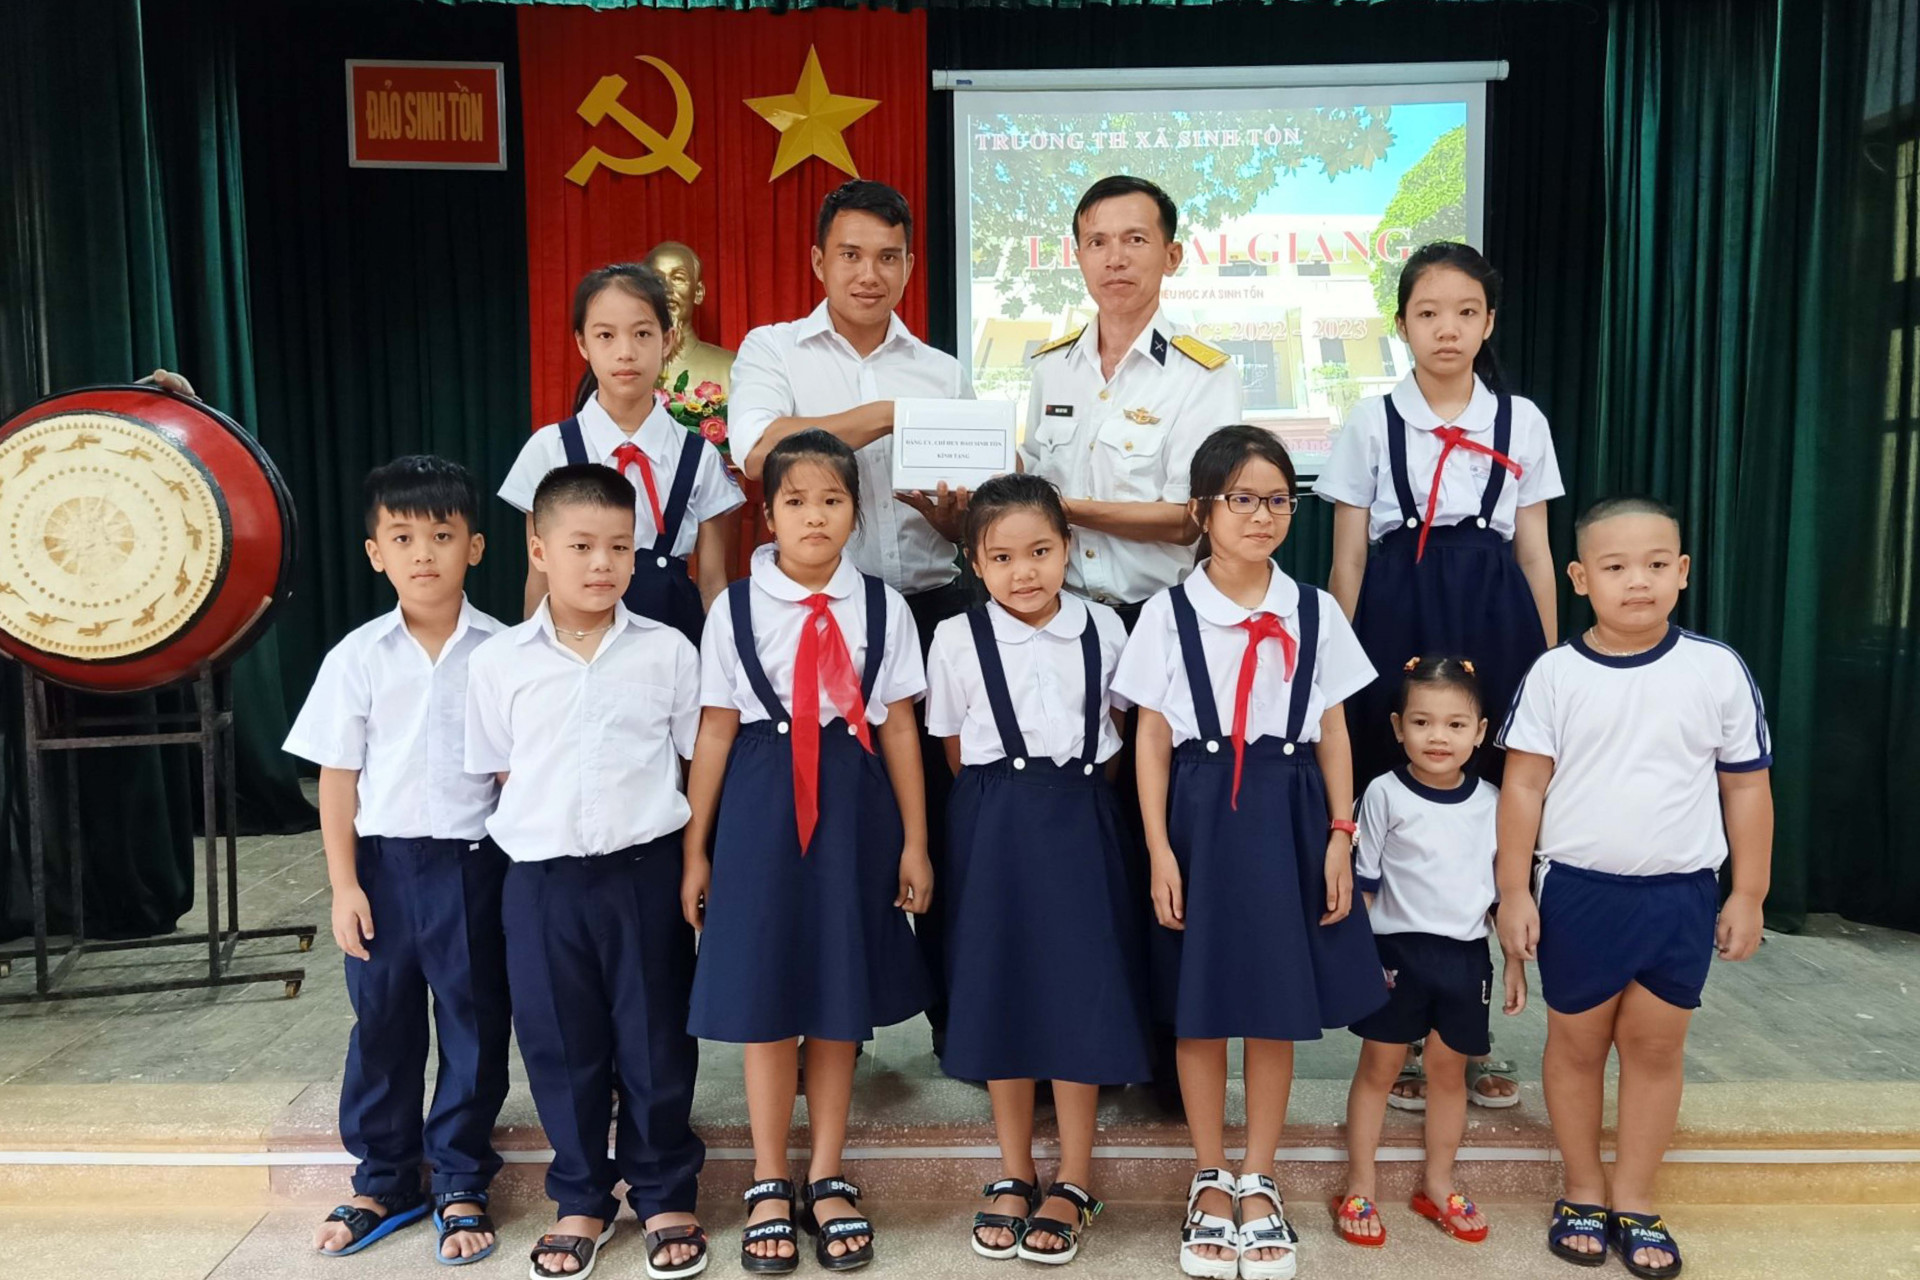 Đại diện chỉ huy đảo Sinh Tồn tặng quà cho các học sinh Trường Tiểu học Sinh Tồn tại lễ khai giảng năm học mới